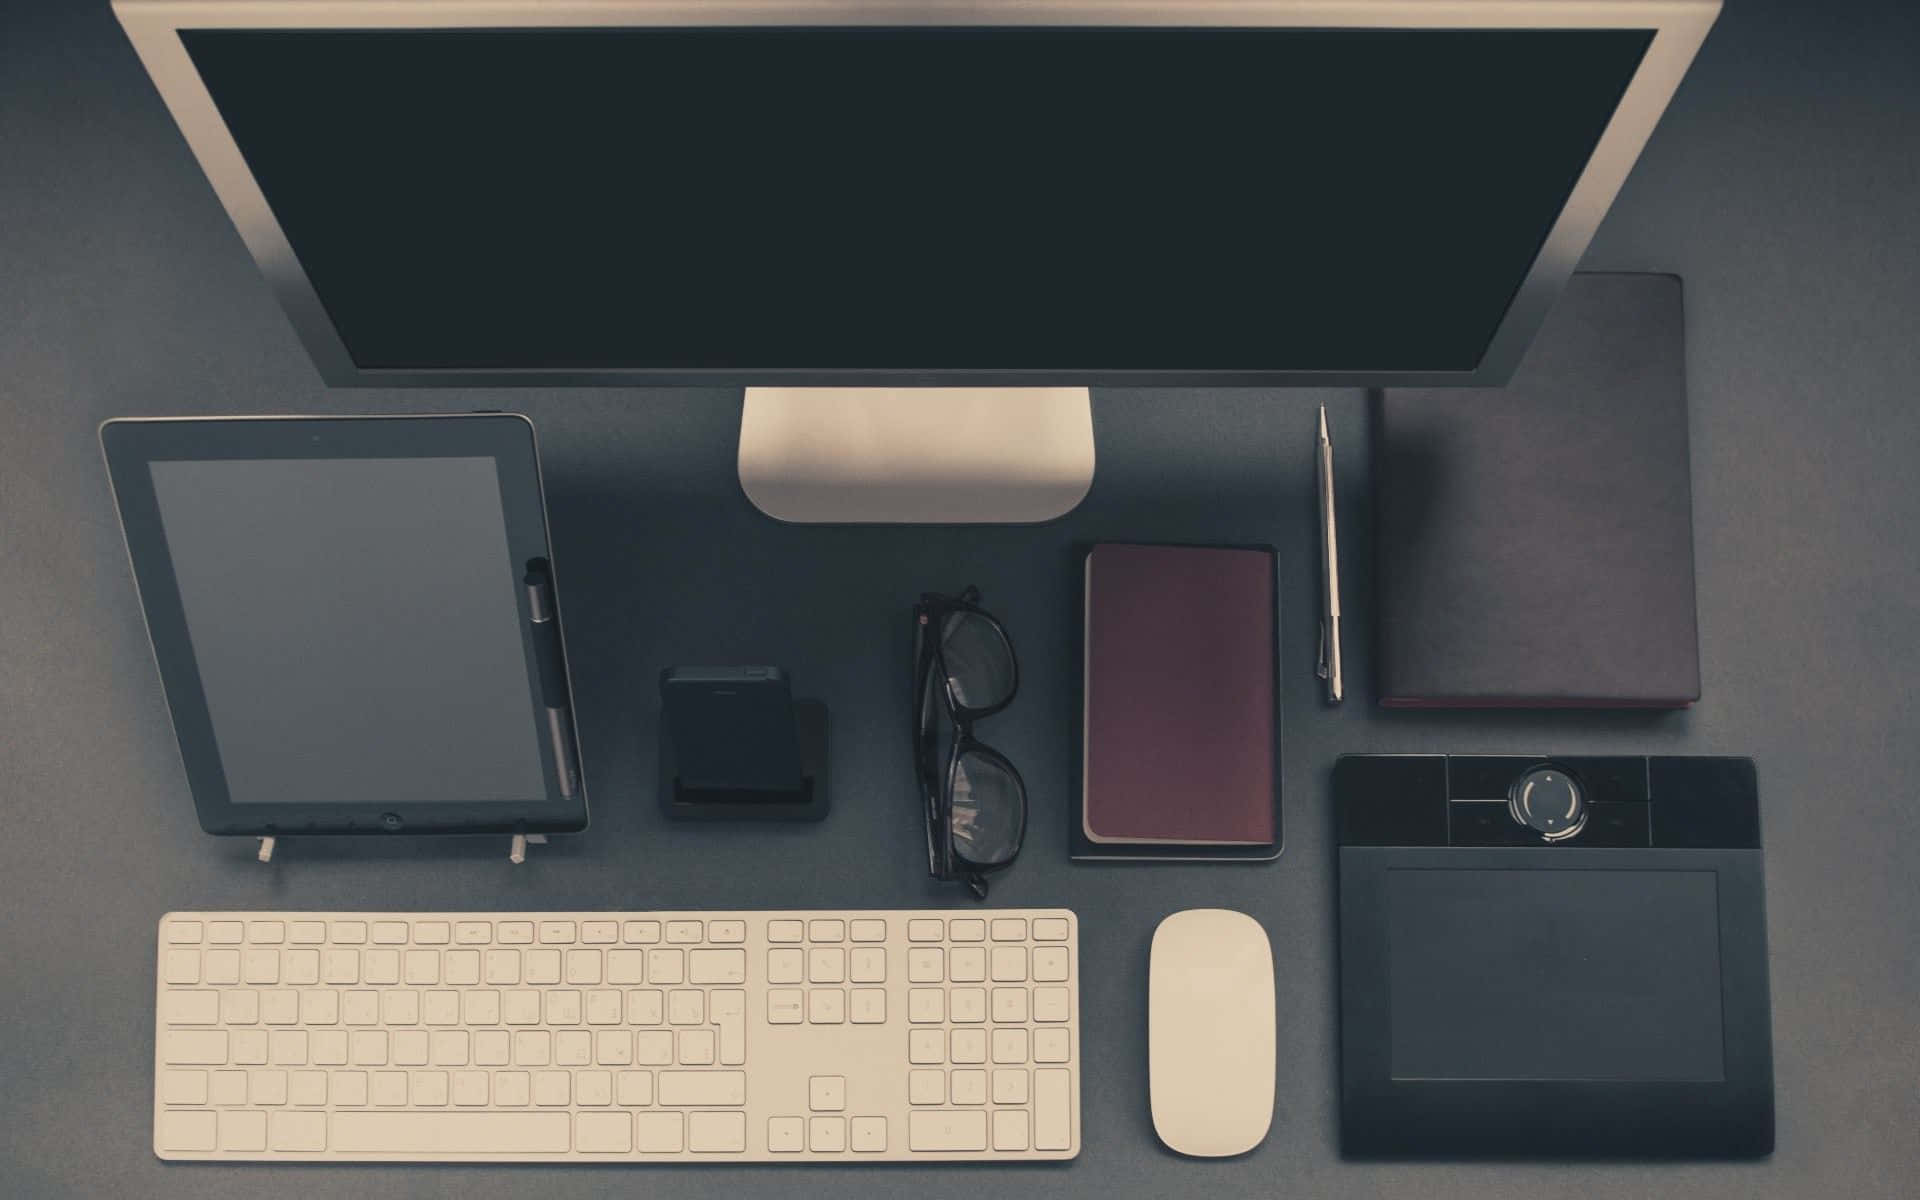 Eincomputer, Eine Maus, Eine Tastatur Und Ein Telefon Auf Einem Tisch.